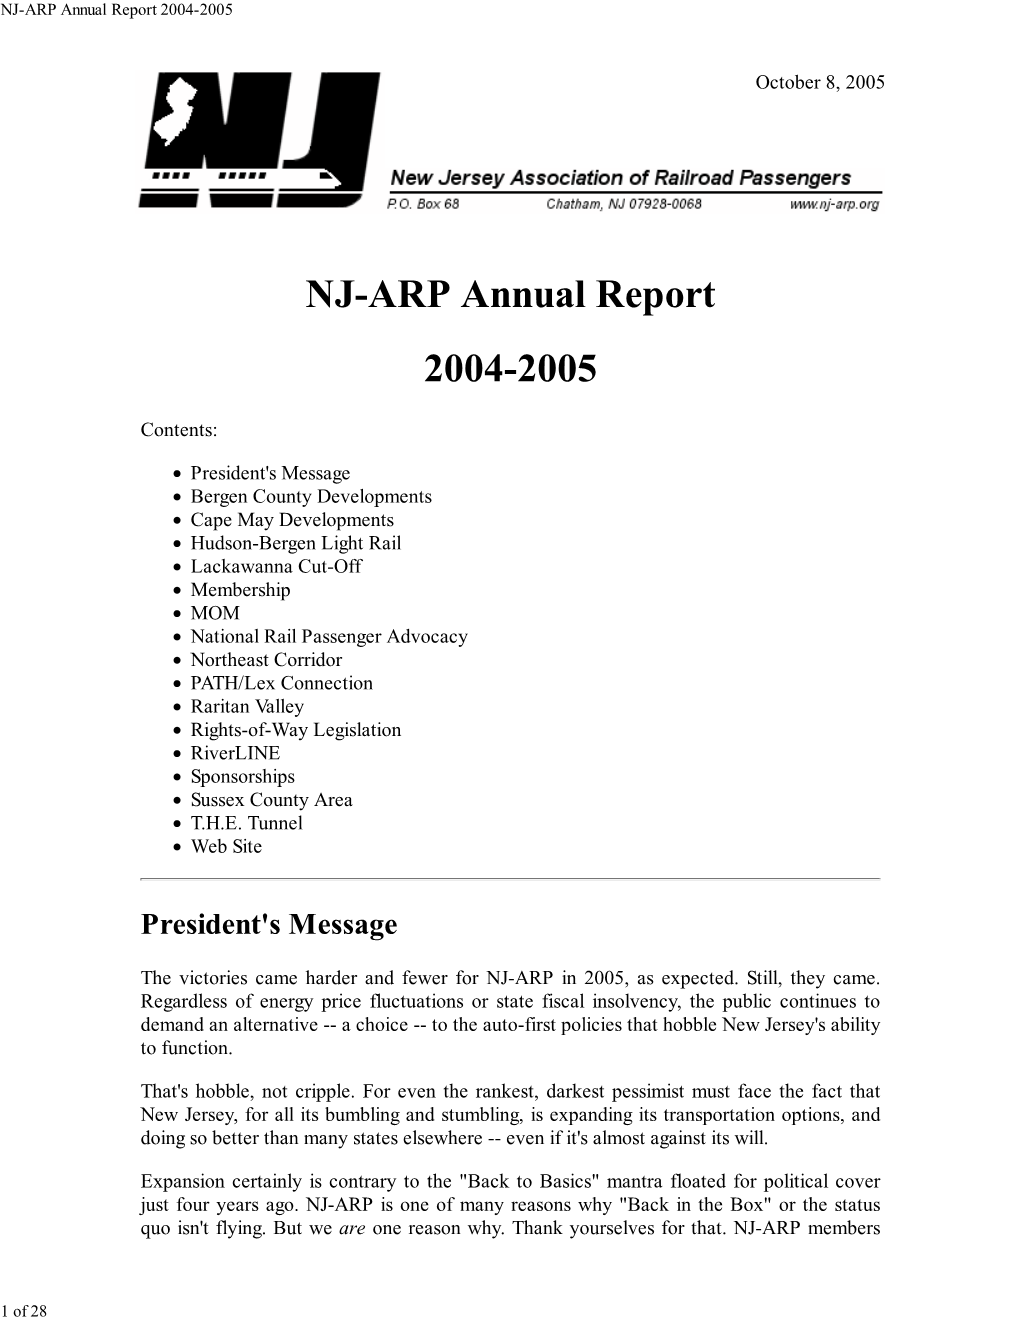 NJ-ARP 2005 Annual Report